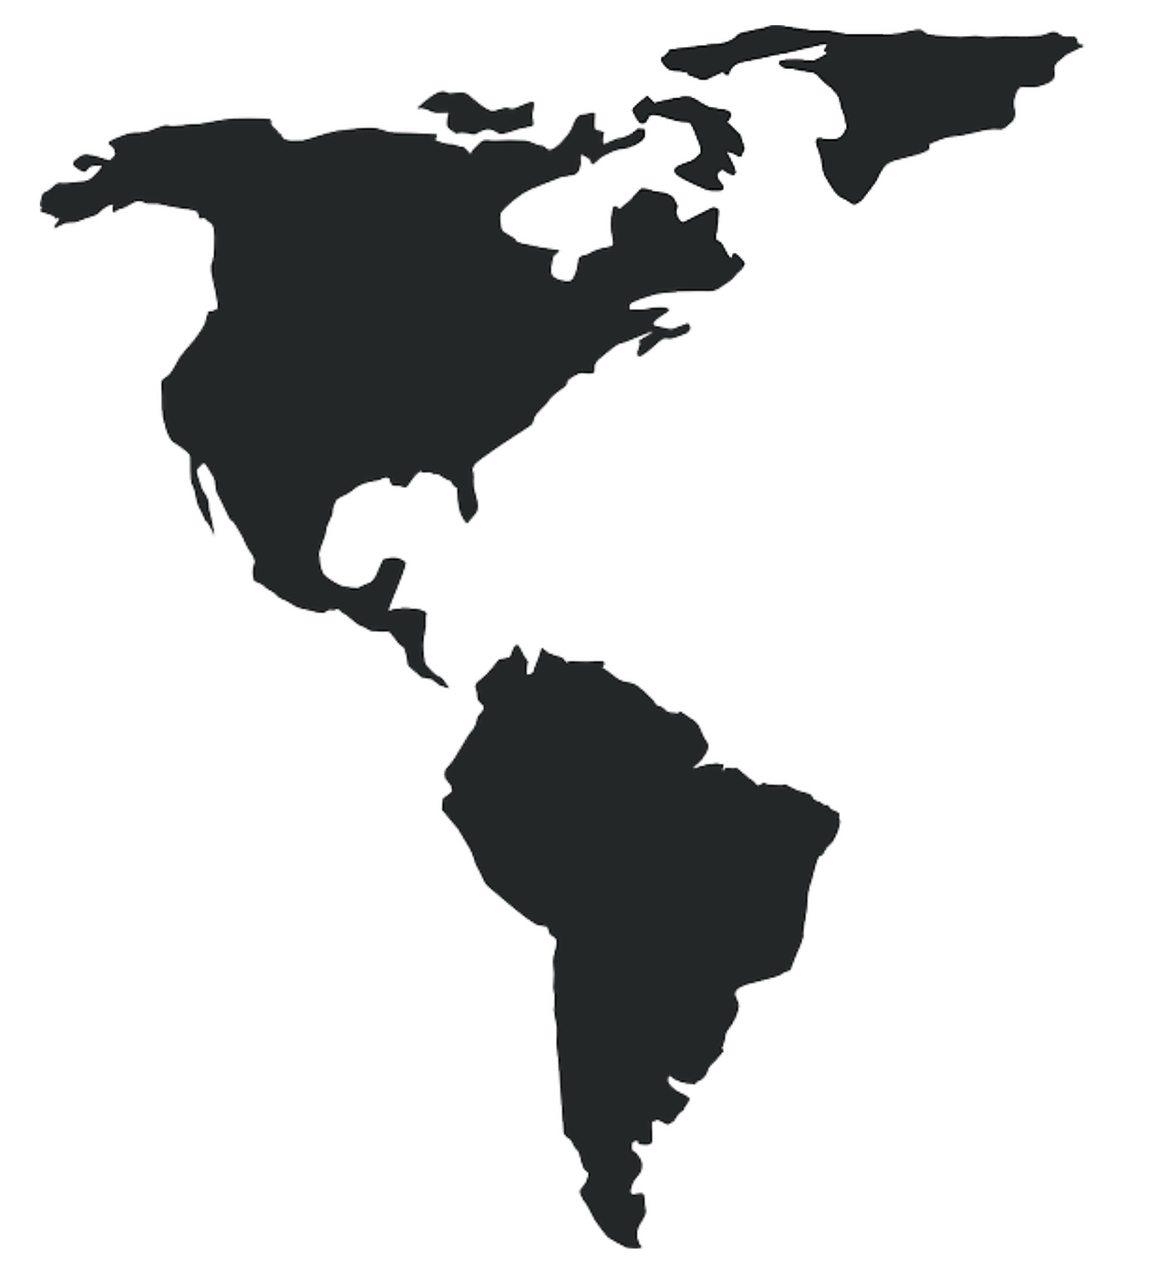 Материки северная и южная америка. Континенты Северная и Южная Америка. Северная Америка материк. Материк Северная Америка и Южная Америка. Континент Америка на карте.